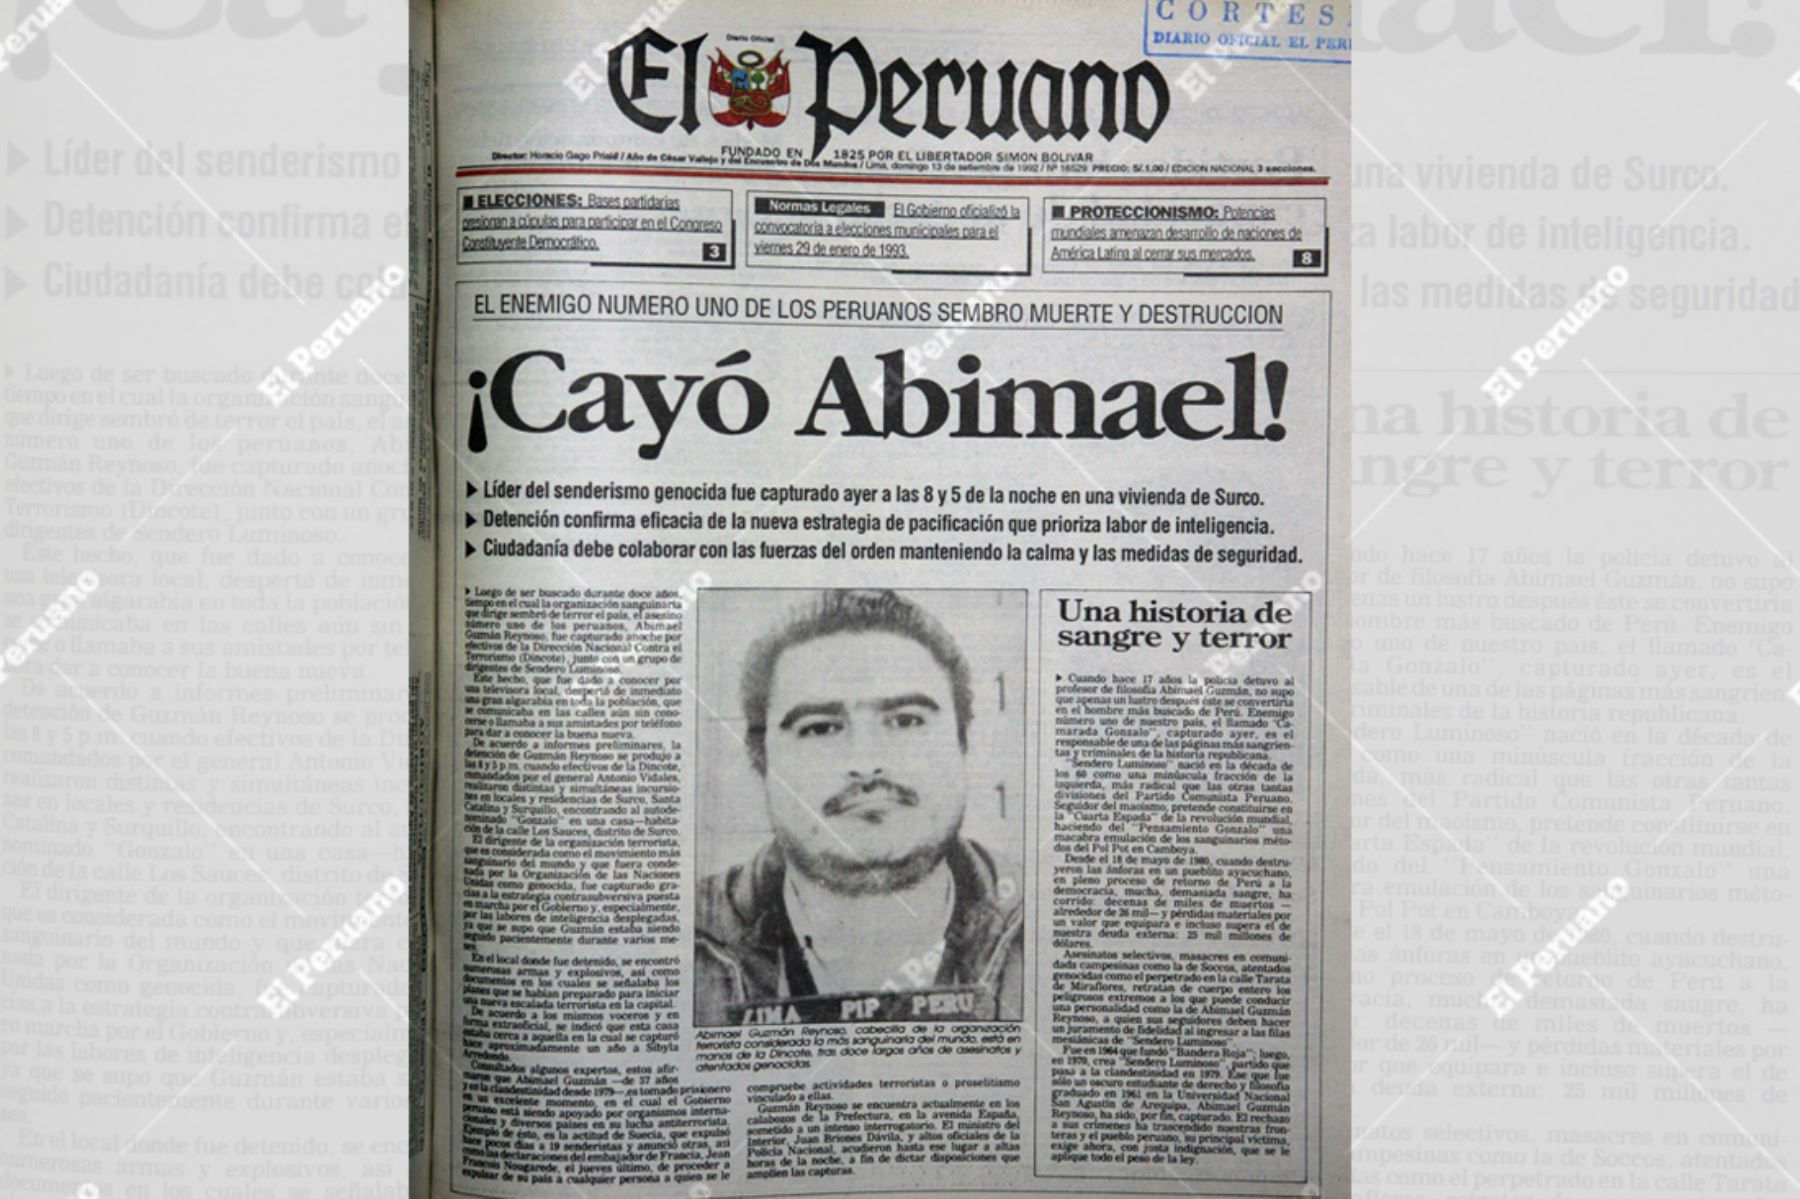 Portada del Diario Oficial El Peruano del 13 de setiembre de 1992 con la noticia de la captura del terrorista Abimael Guzmán.